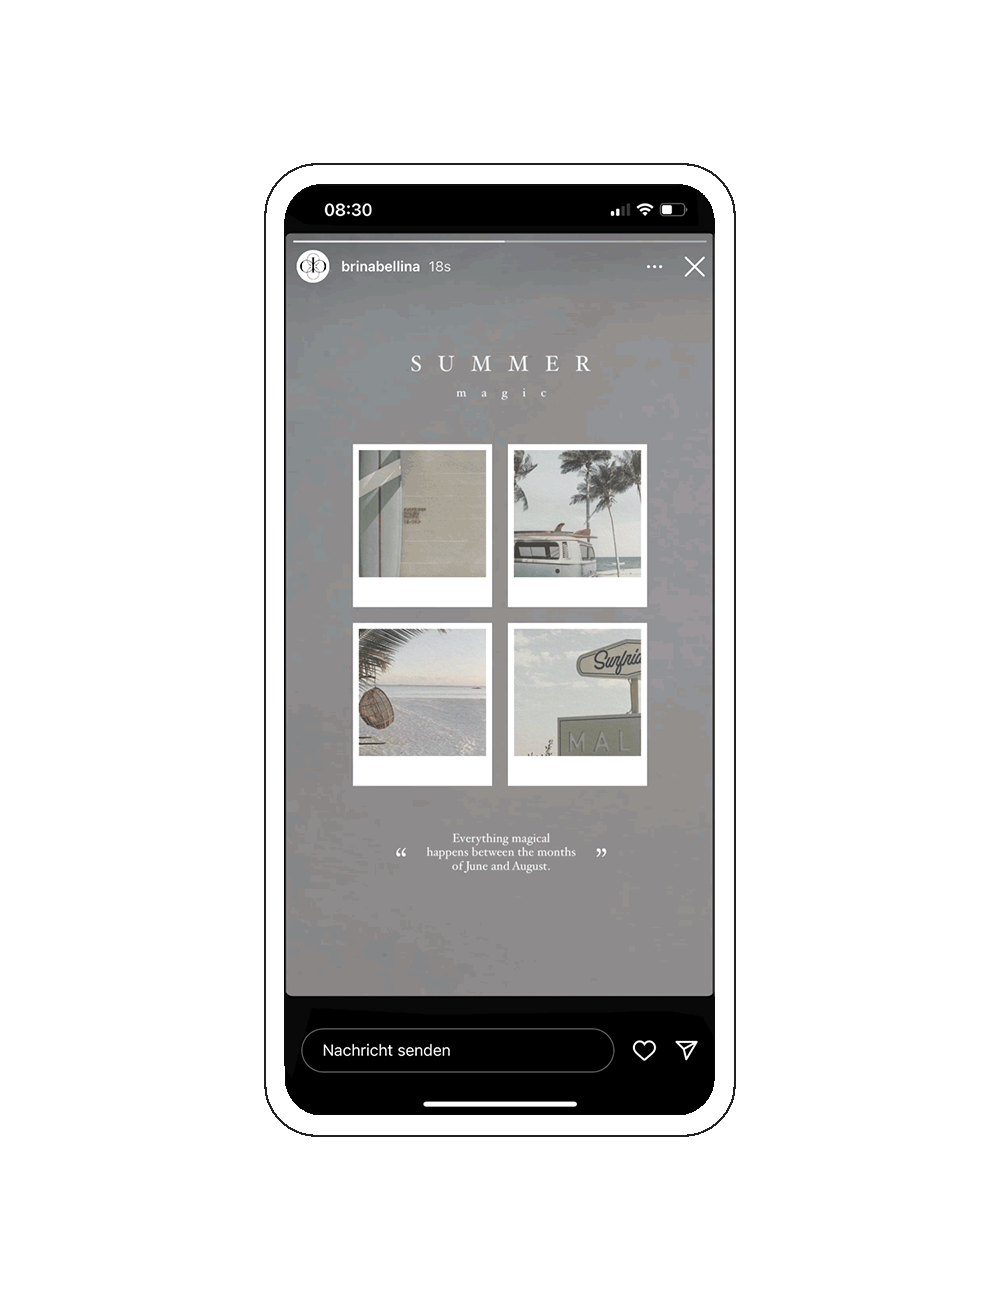 Gratis Instagram Story Template mit vier Polaroidbildern aus der 'Summer Magic' Instagram Story Sticker Kollektion.